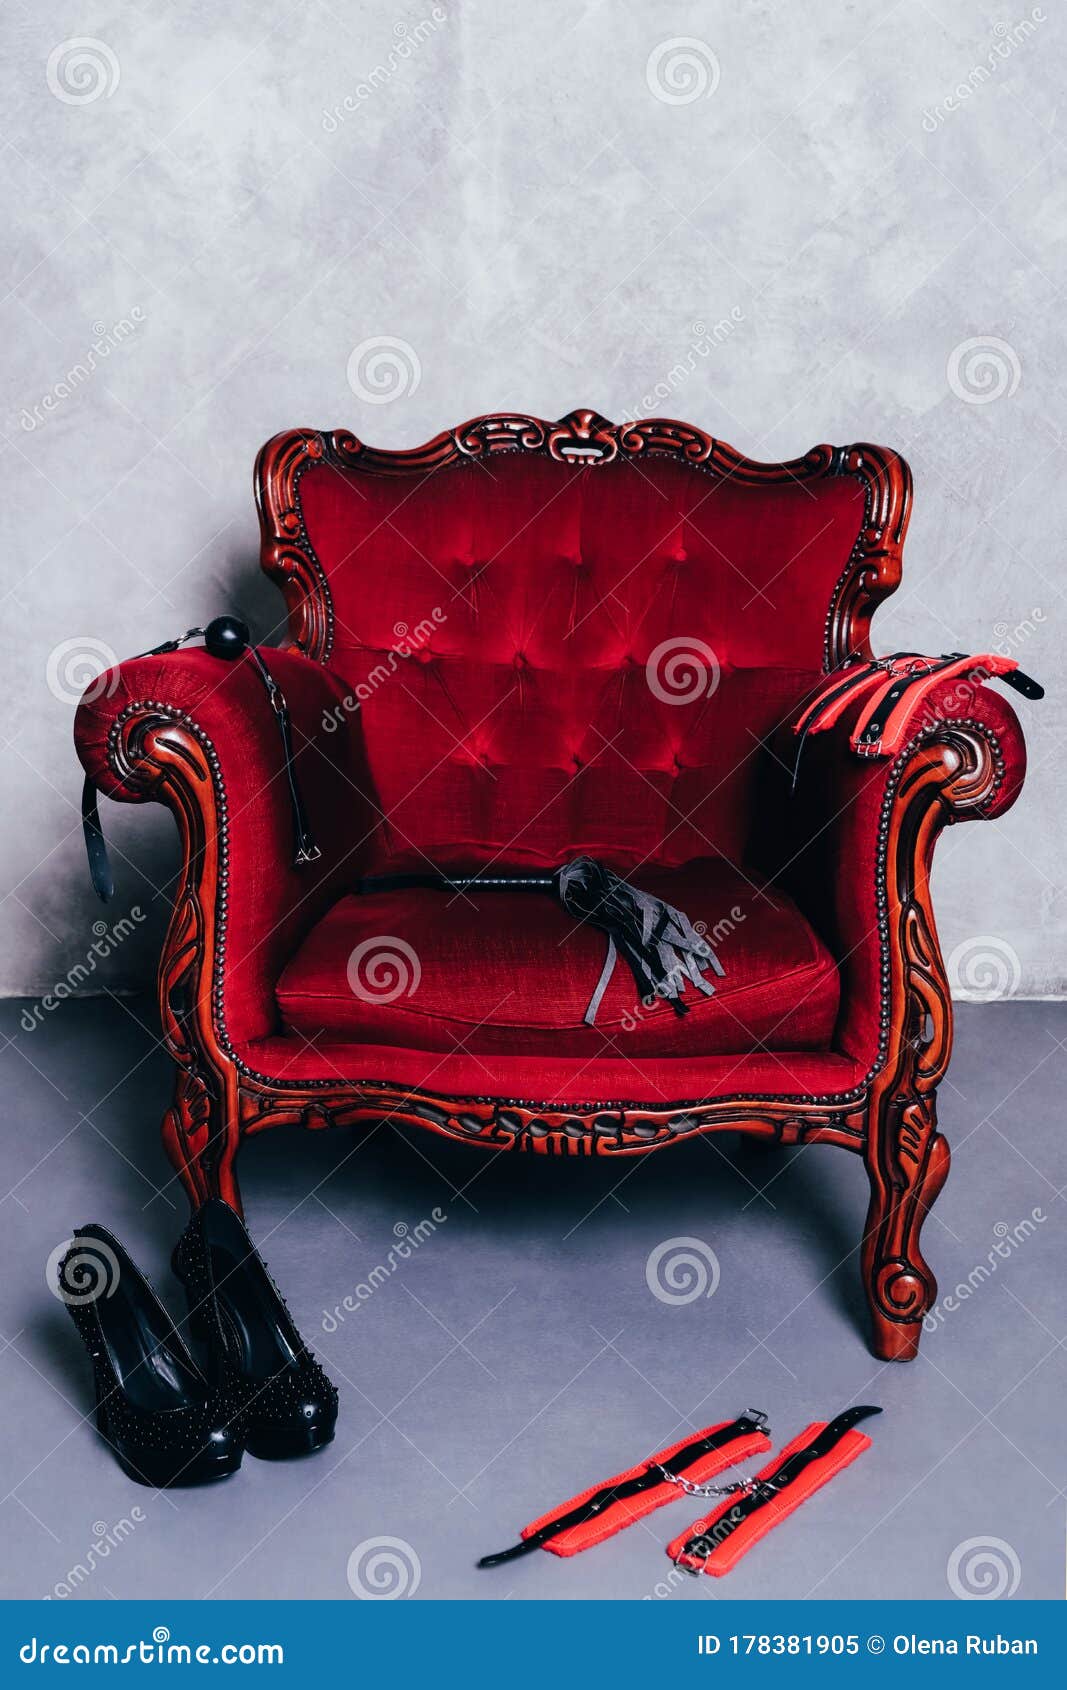 set-van-erotisch-speelgoed-voor-bdsm-op-rode-stoel-stock-afbeelding